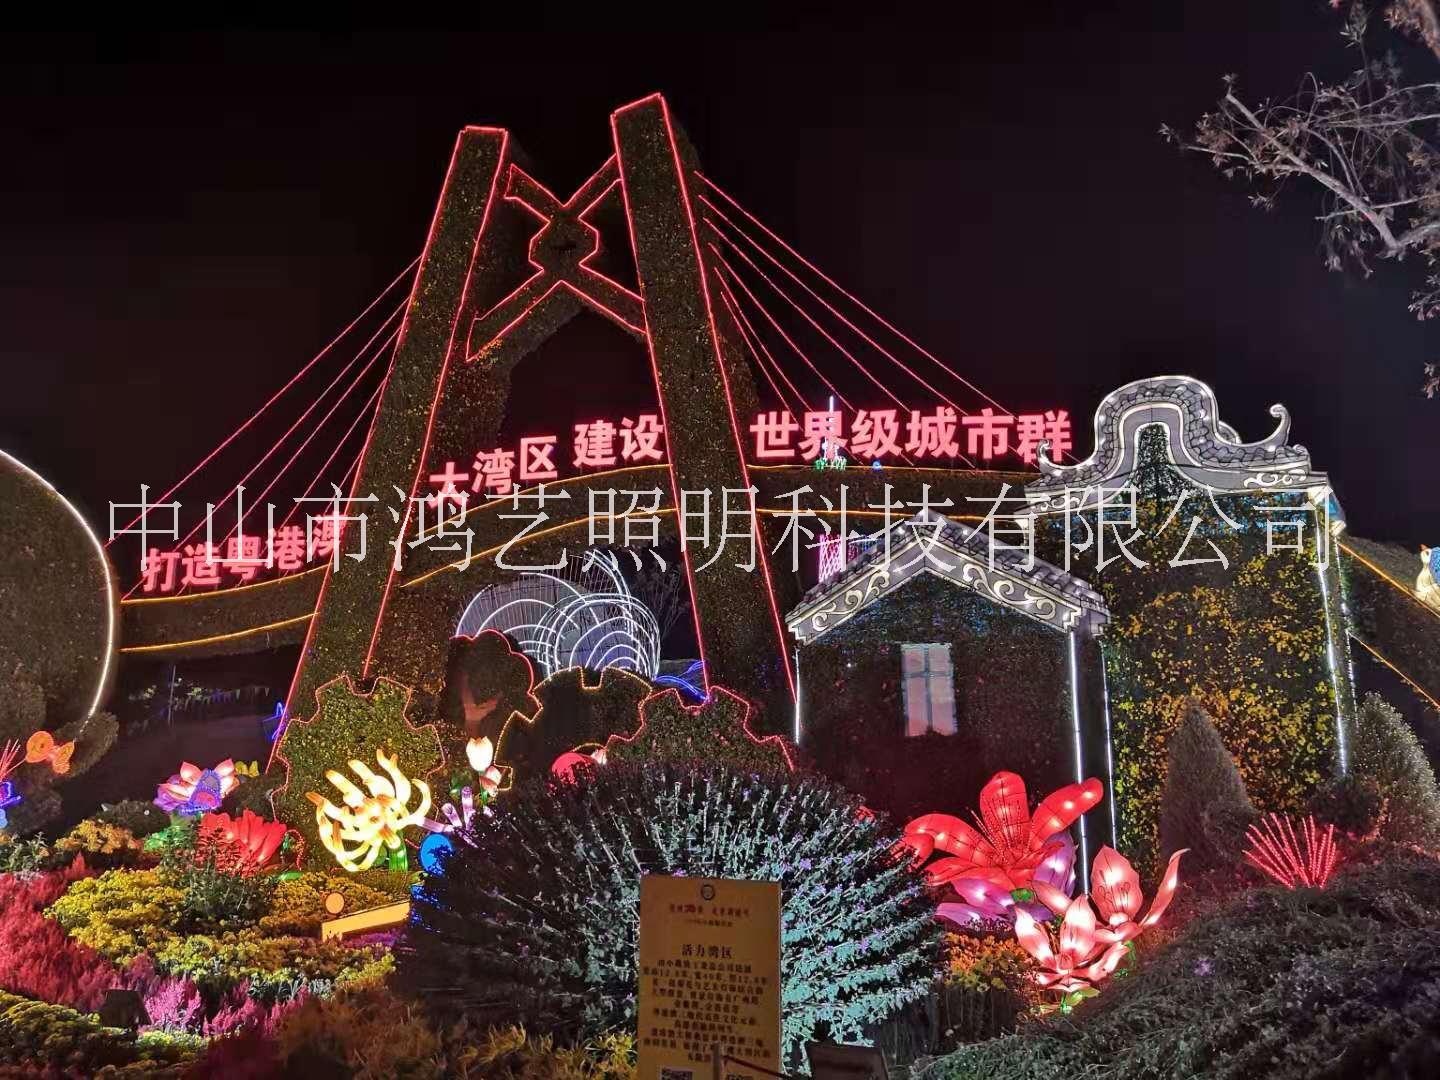 广州景观灯光广州景观灯光怎么样、哪家好、工程、设计、报价【中山市鸿艺照明科技有限公司】